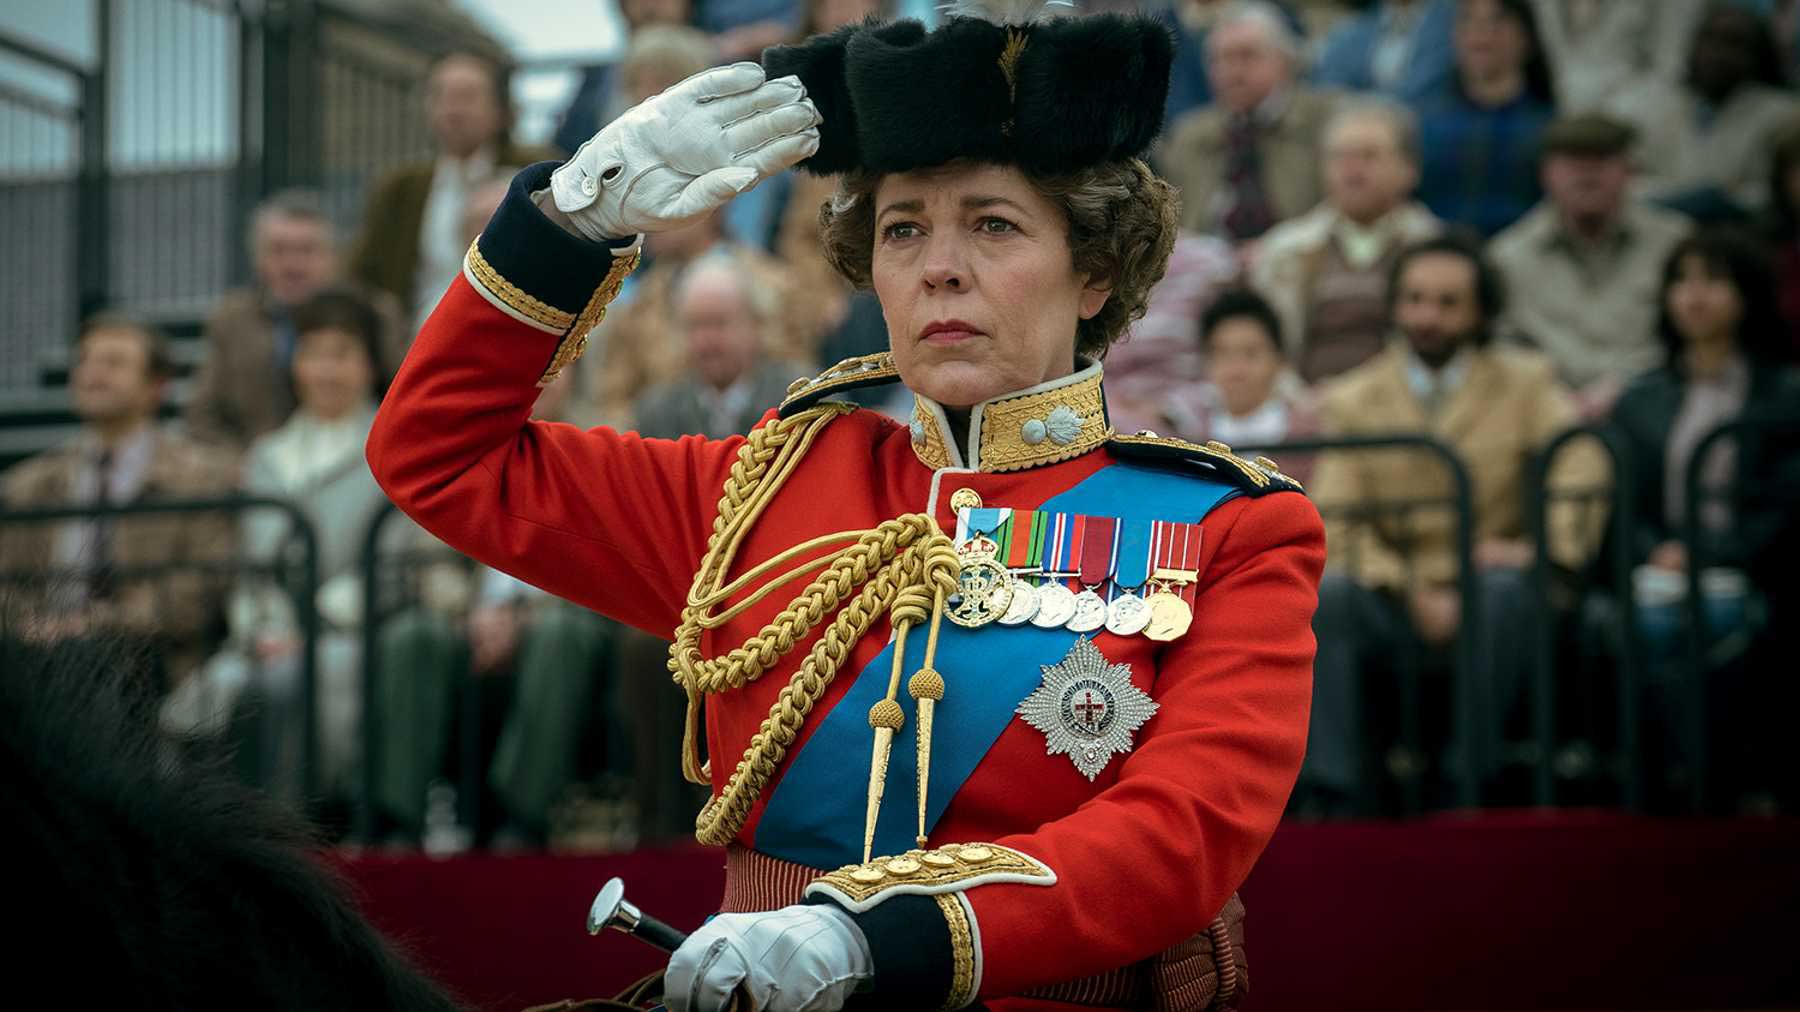 الیویا کلمن در حال دادن سلام نظامی در فصل چهارم سریال The Crown